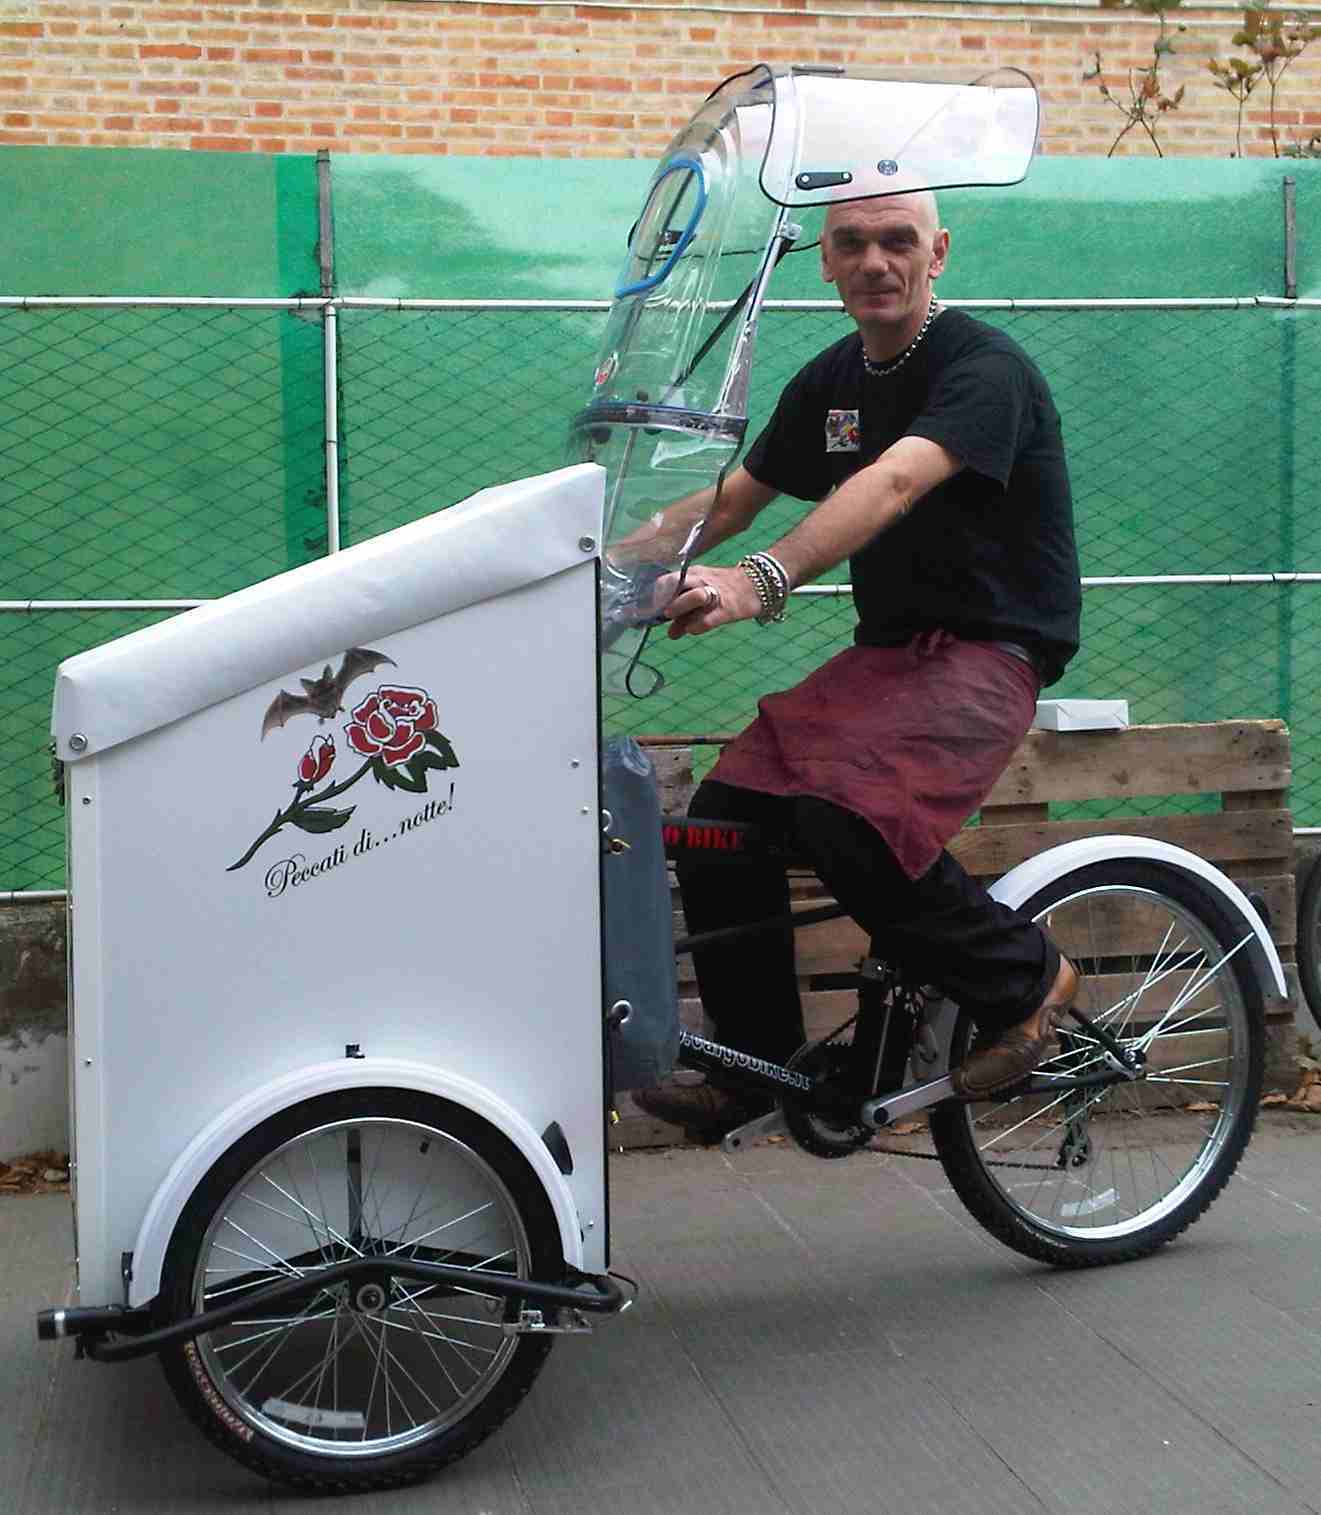 triciclo cargo bike promozionale e pubblicità negozio pane